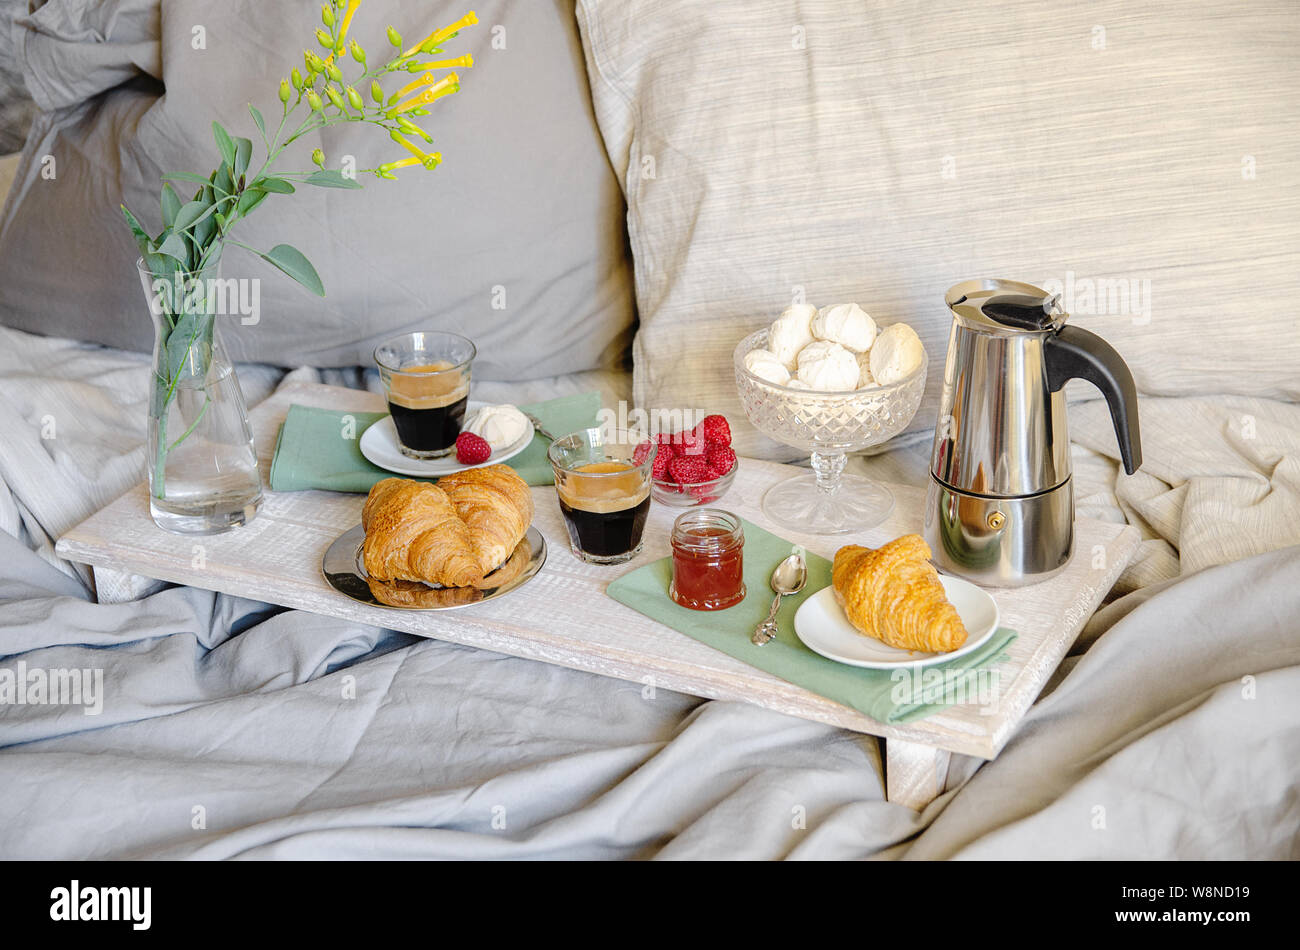 Romantisches Frühstück oder Brunch für zwei im Bett. Kaffeemaschine und  Kaffee Gläser, Croissants, Marmelade, Beeren, Baiser und Blumen auf Holz  fach Romantische Stockfotografie - Alamy